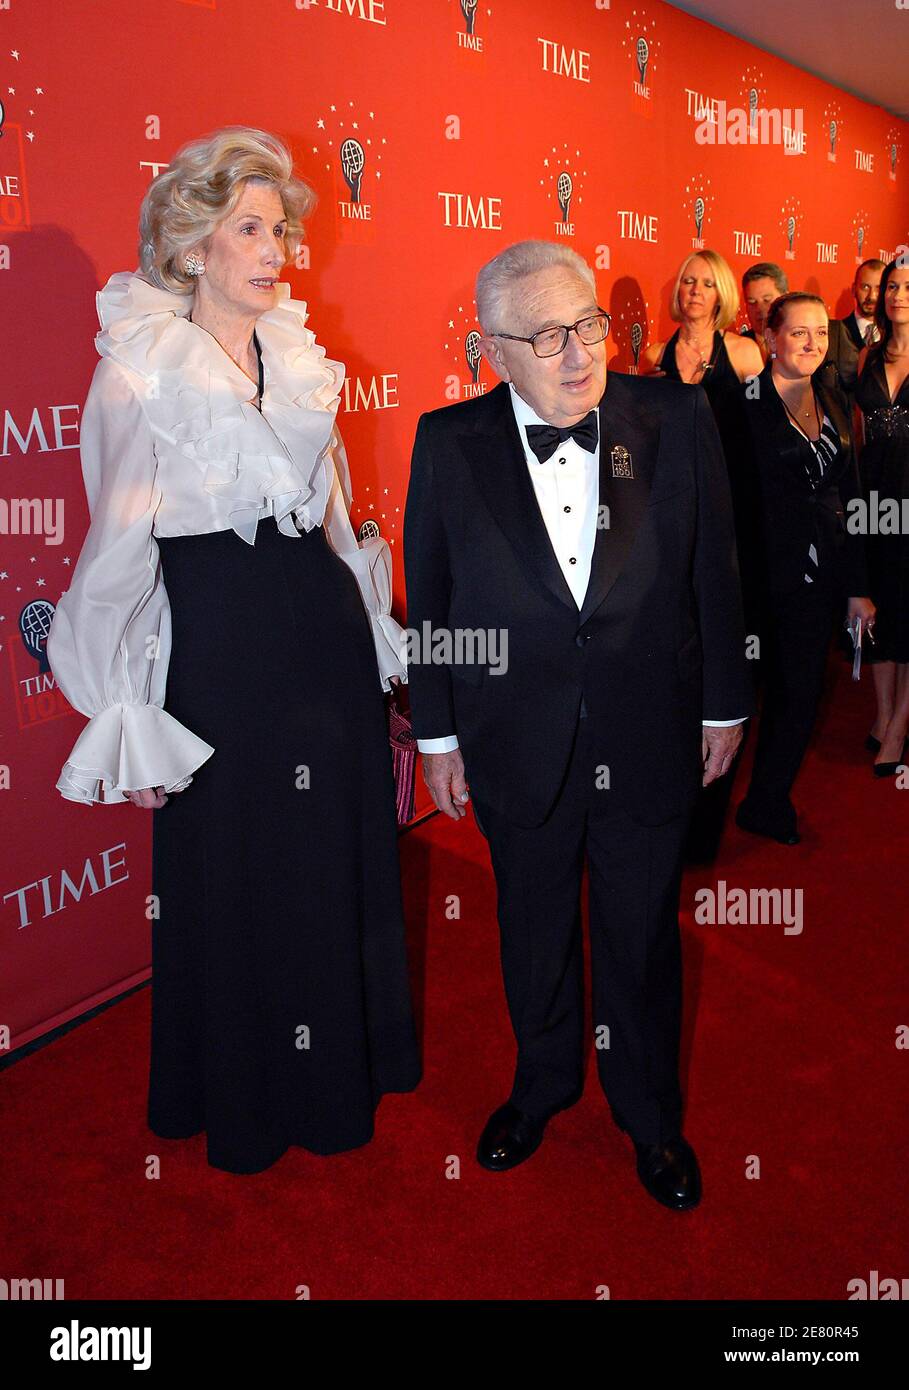 Henry Kissinger und seine Frau Nancy kommen am 100 8. Mai 2007 zur Gala im Jazz im Lincoln Center in New York City, NY, USA, um die Liste der 100 einflussreichsten Menschen der Welt zu feiern. Foto von Olivier Douliery/ABACAPRESS.COM Stockfoto